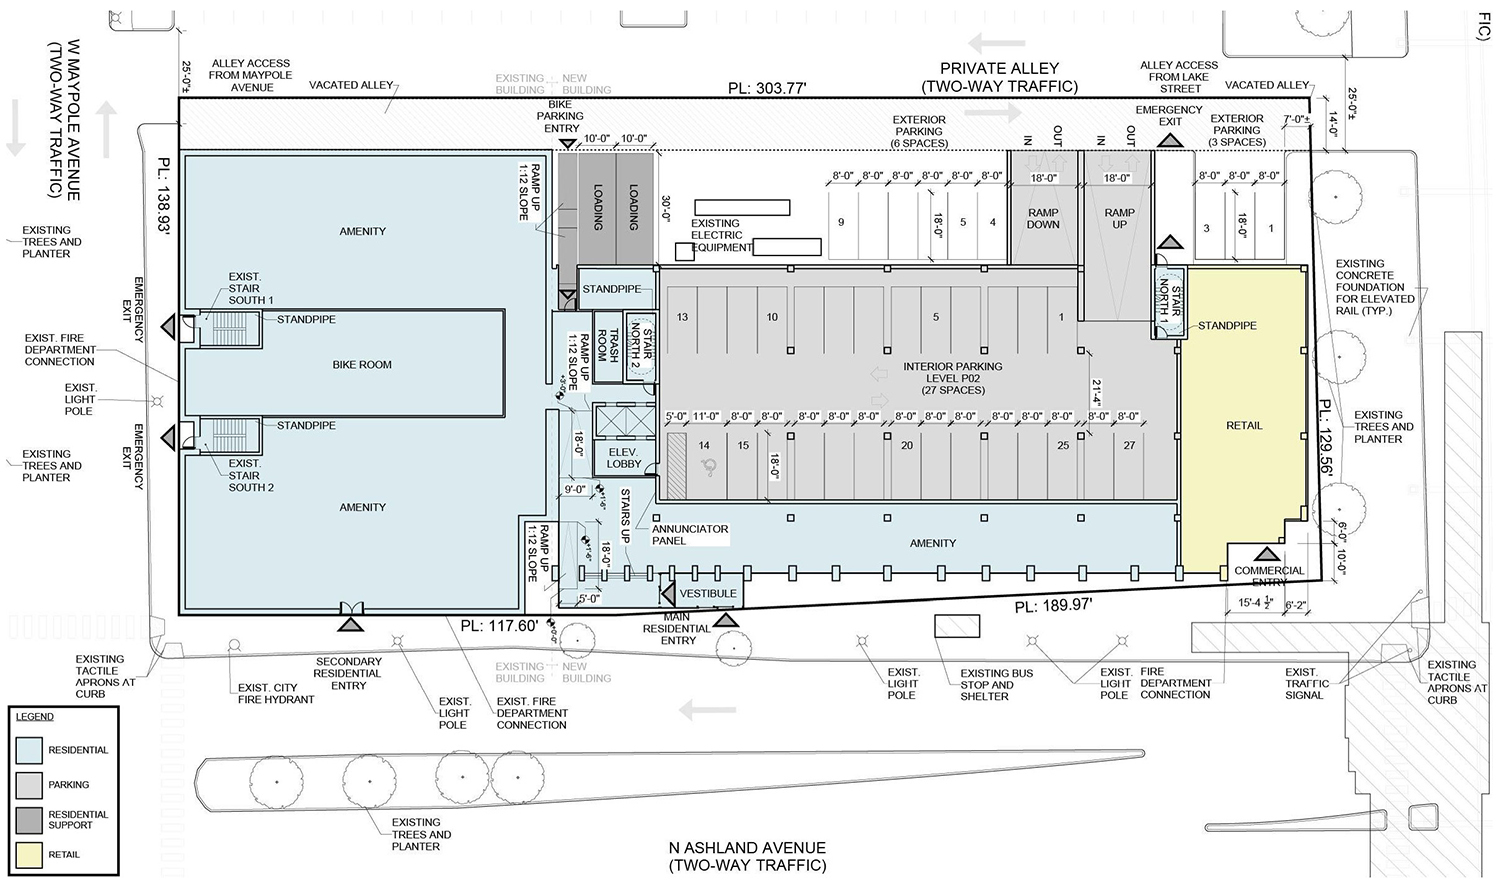 Ground Floor Plan for 140 N Ashland Avenue. Drawing by Brininstool + Lynch